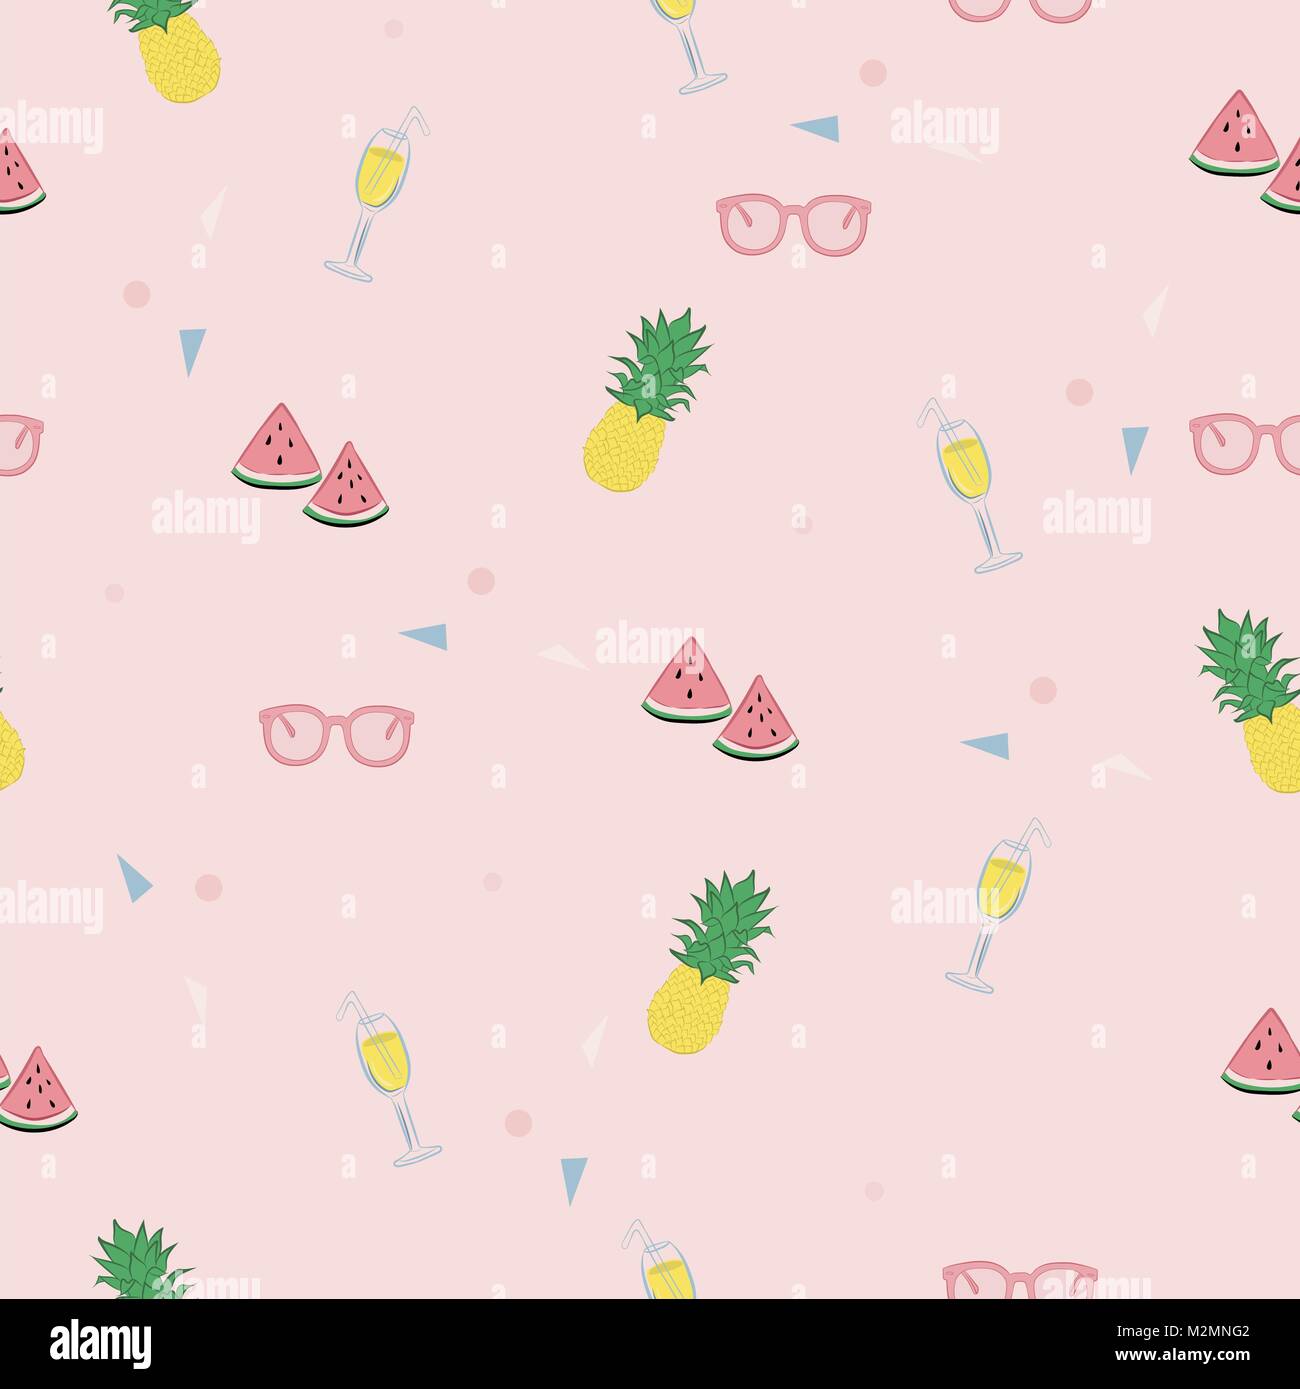 Rosa e carino pattern tropicale con i cocomeri, ananassi, sunglesses, cocktail e piccoli triangoli in colori pastello. Illustrazione Vettoriale